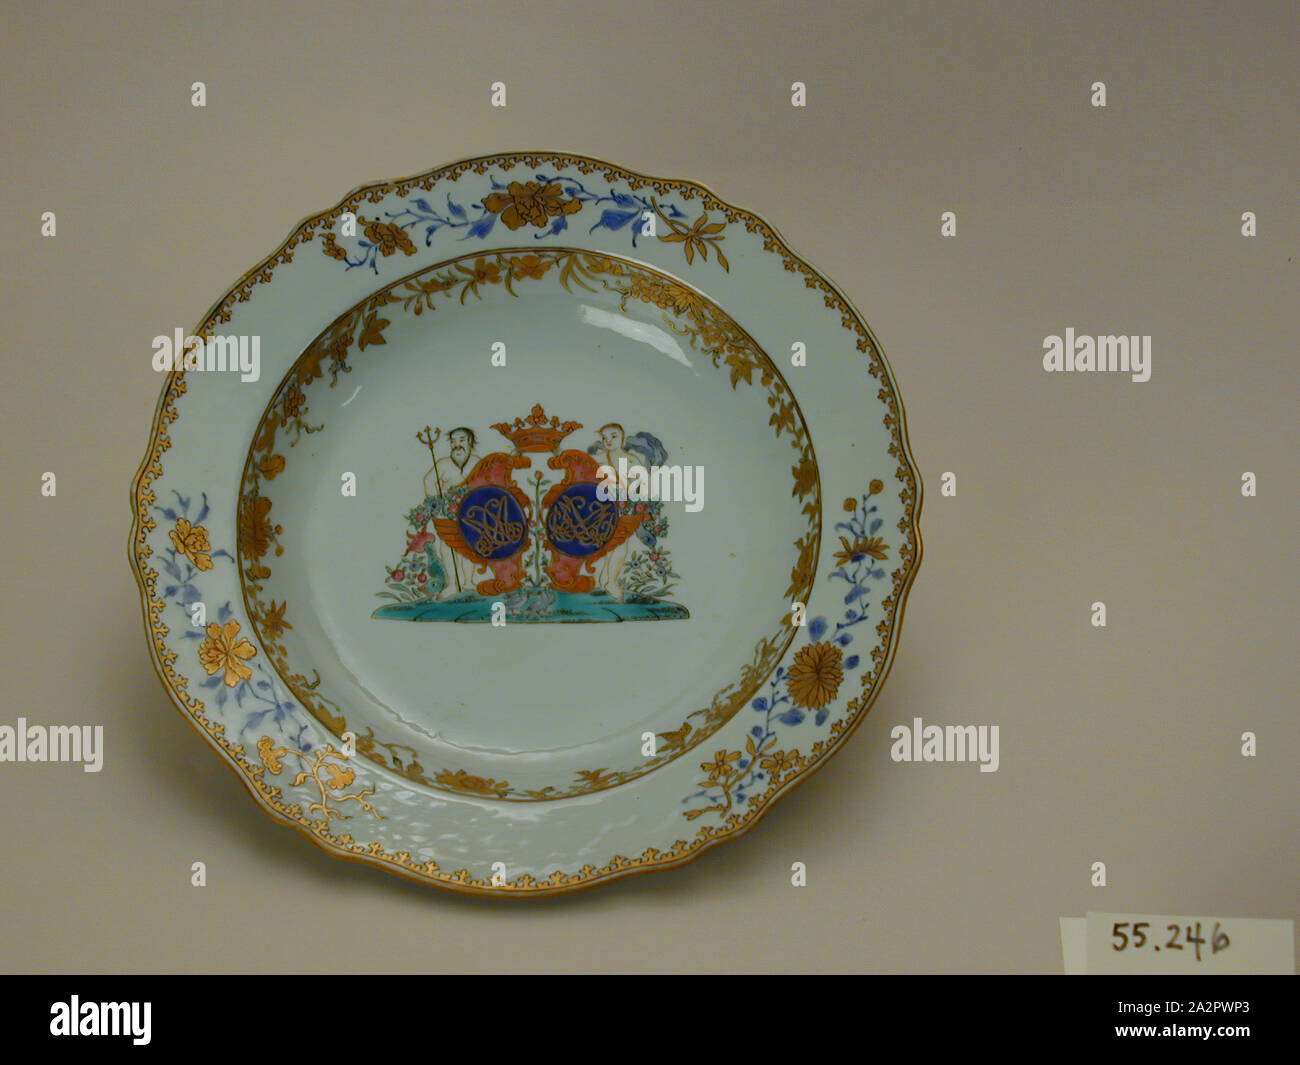 Inconnu (Chinois), assiette à soupe, fin du xviiie siècle, émaillée porcelaine pâte dure avec émail polychrome et dorure, Hauteur x diamètre : 1 1/8 x 9 in. (2,9 x 22,9 cm Banque D'Images